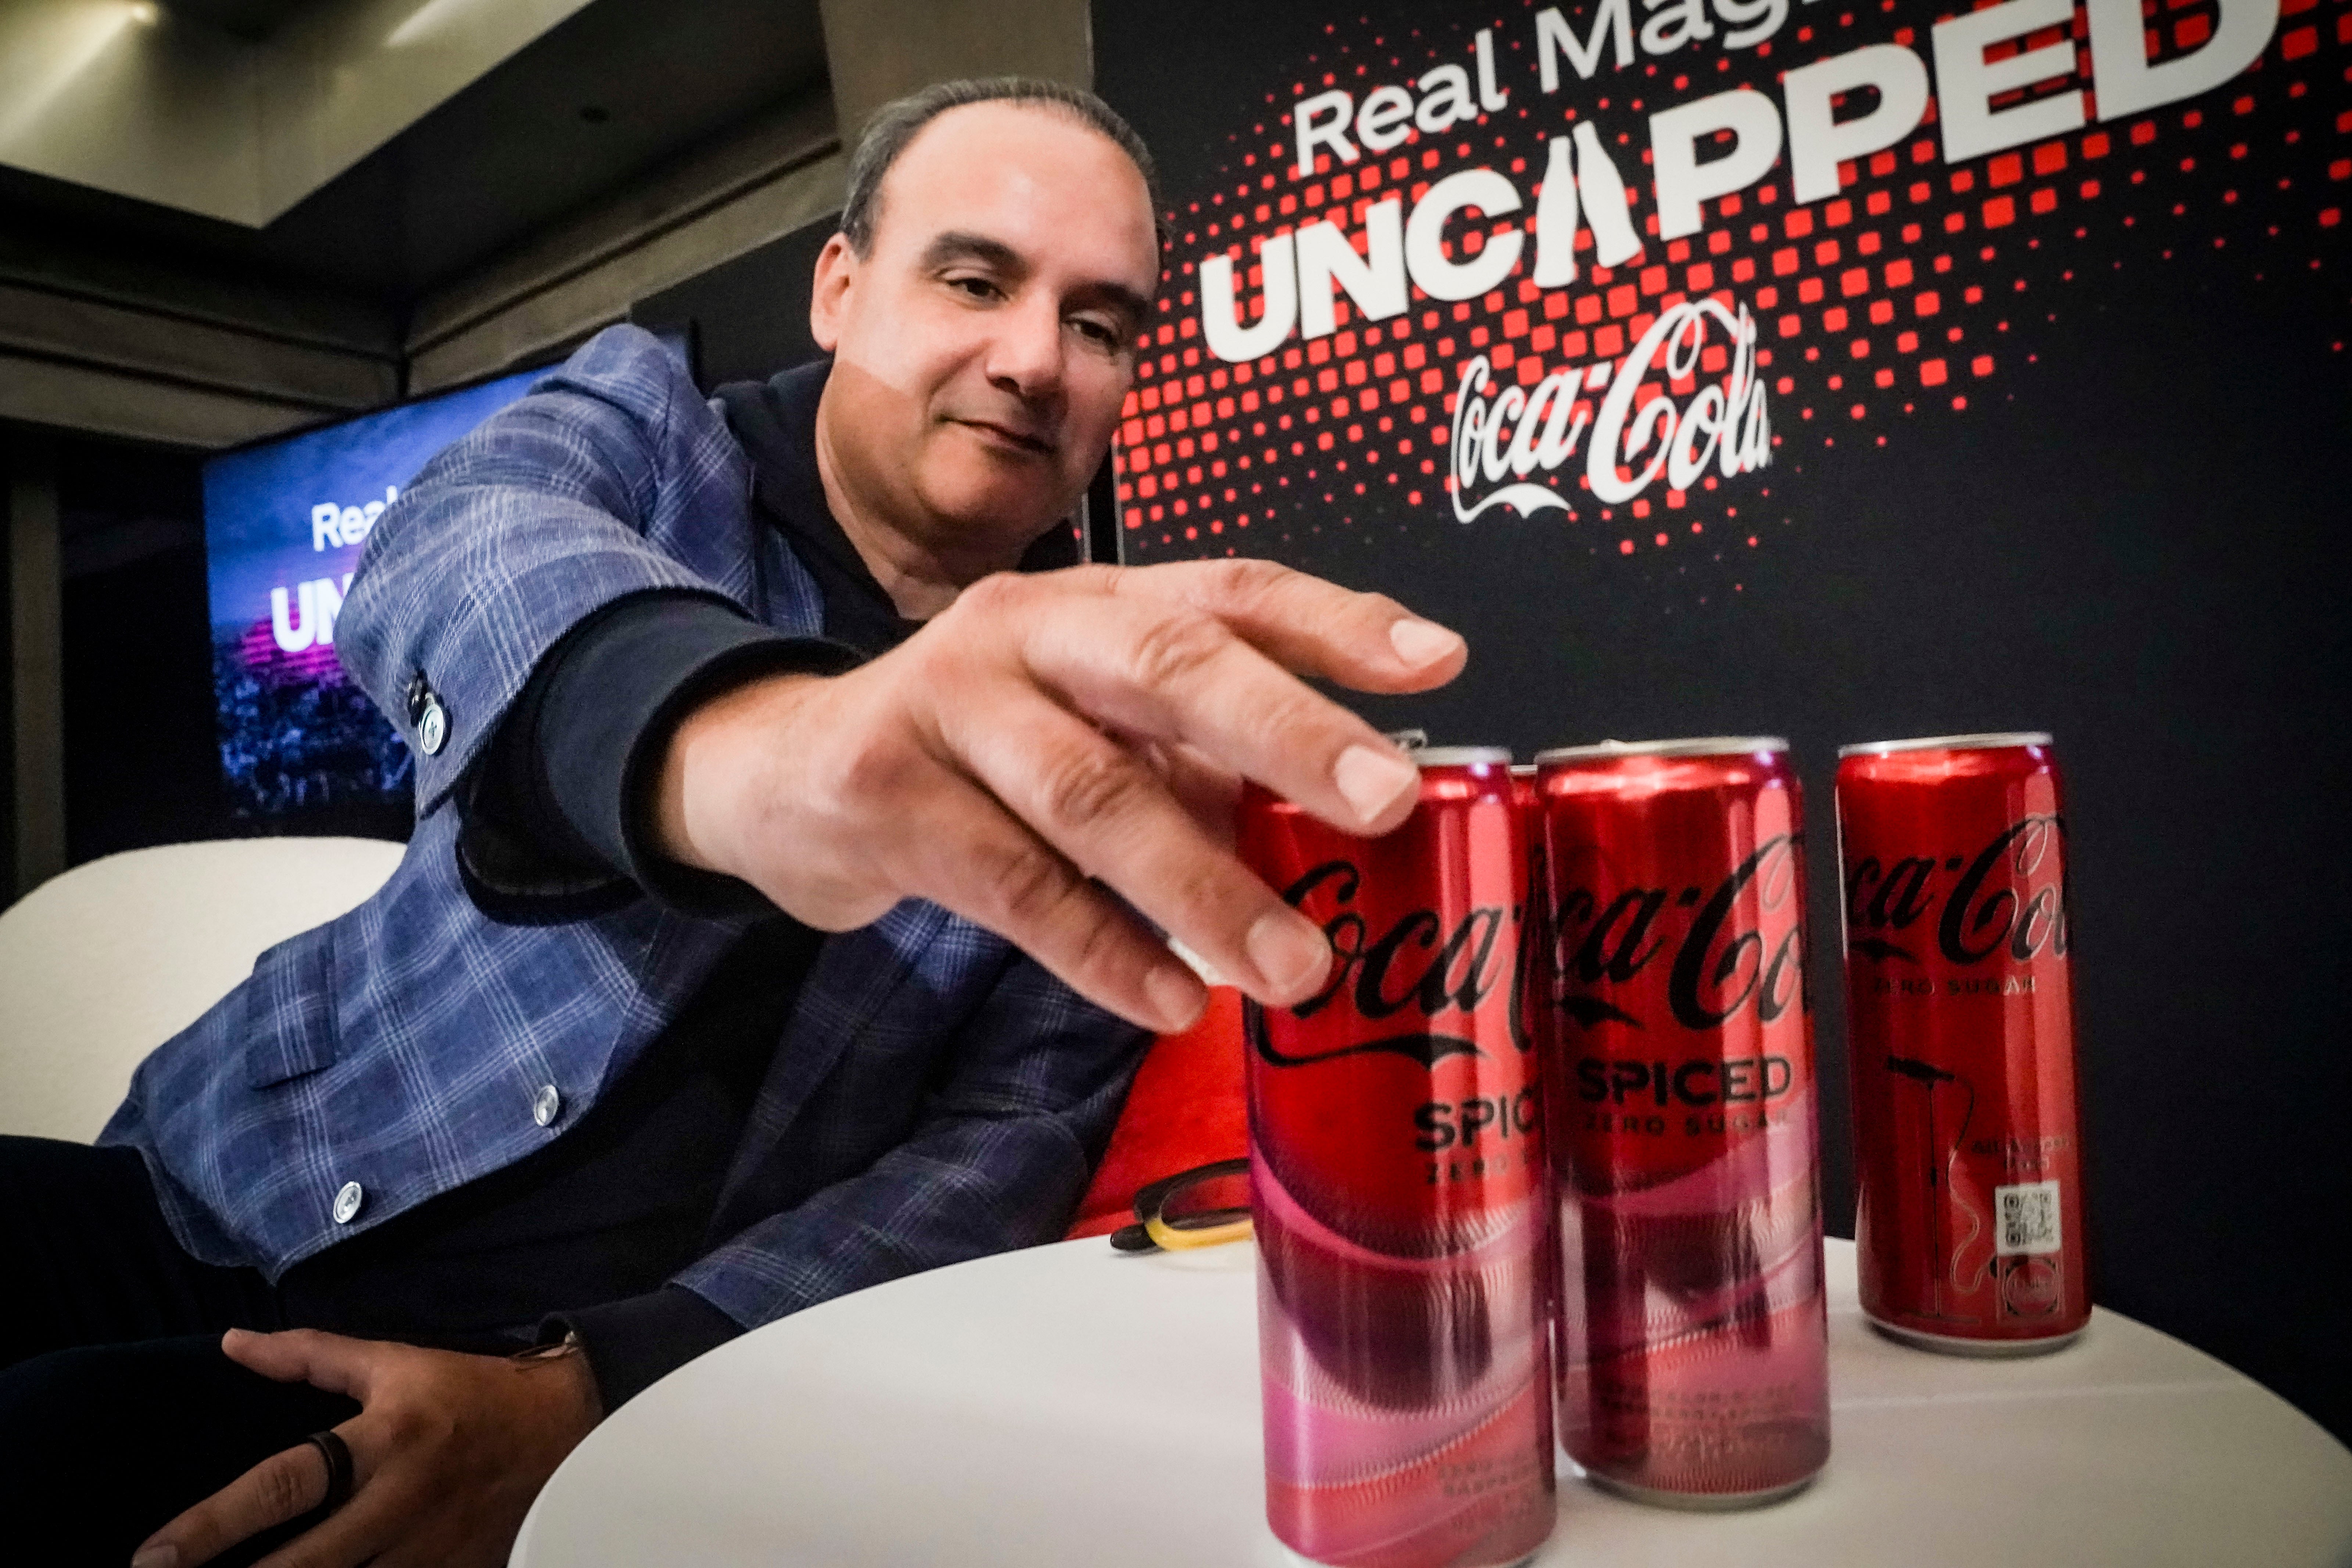 Selman Careaga, presidente de la sección global de Coca-Cola, toma una Coca-Cola Spiced